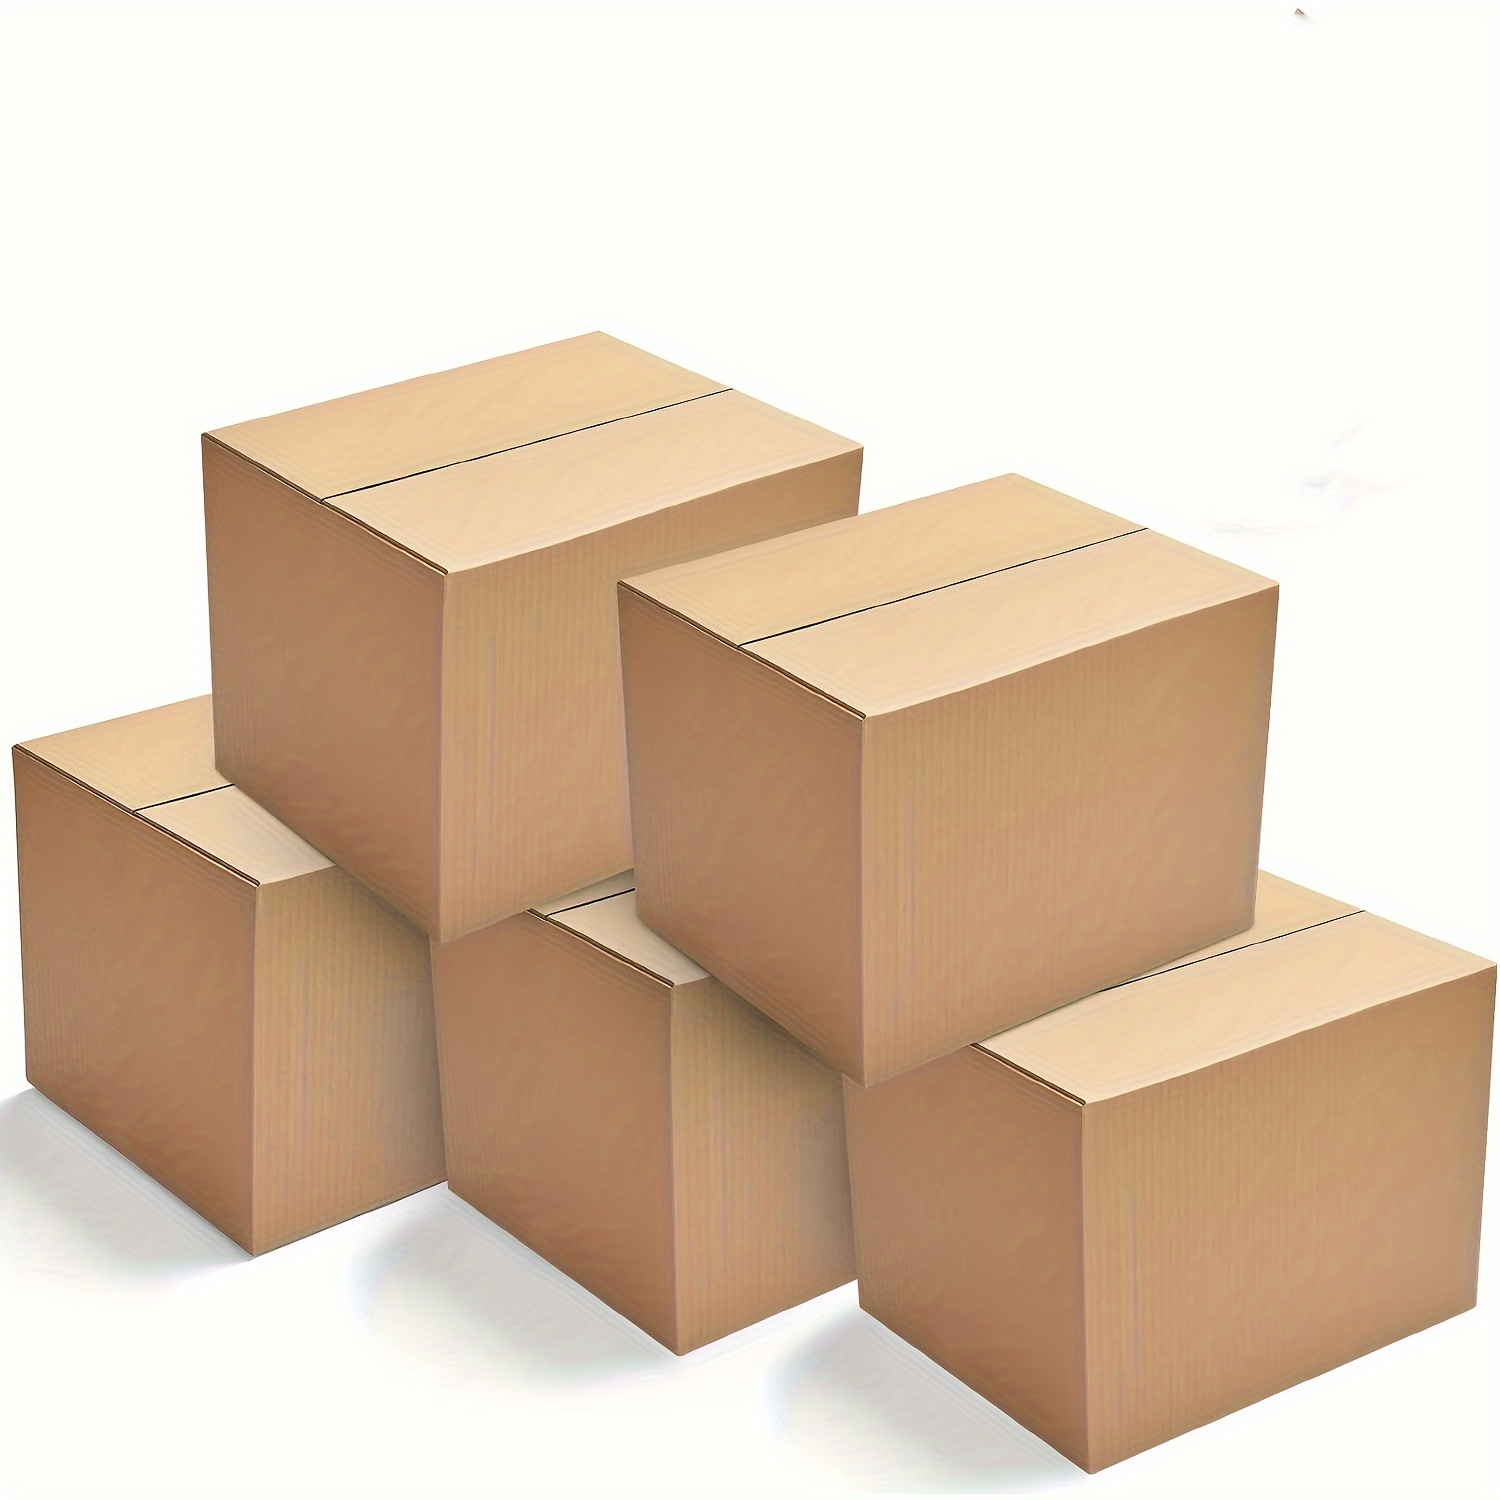  Cajas de mudanza grandes paquete de 6 con asas – 20 pulgadas x  20 pulgadas x 15 pulgadas, cajas de mudanza grandes / paquete de 6 :  Productos de Oficina